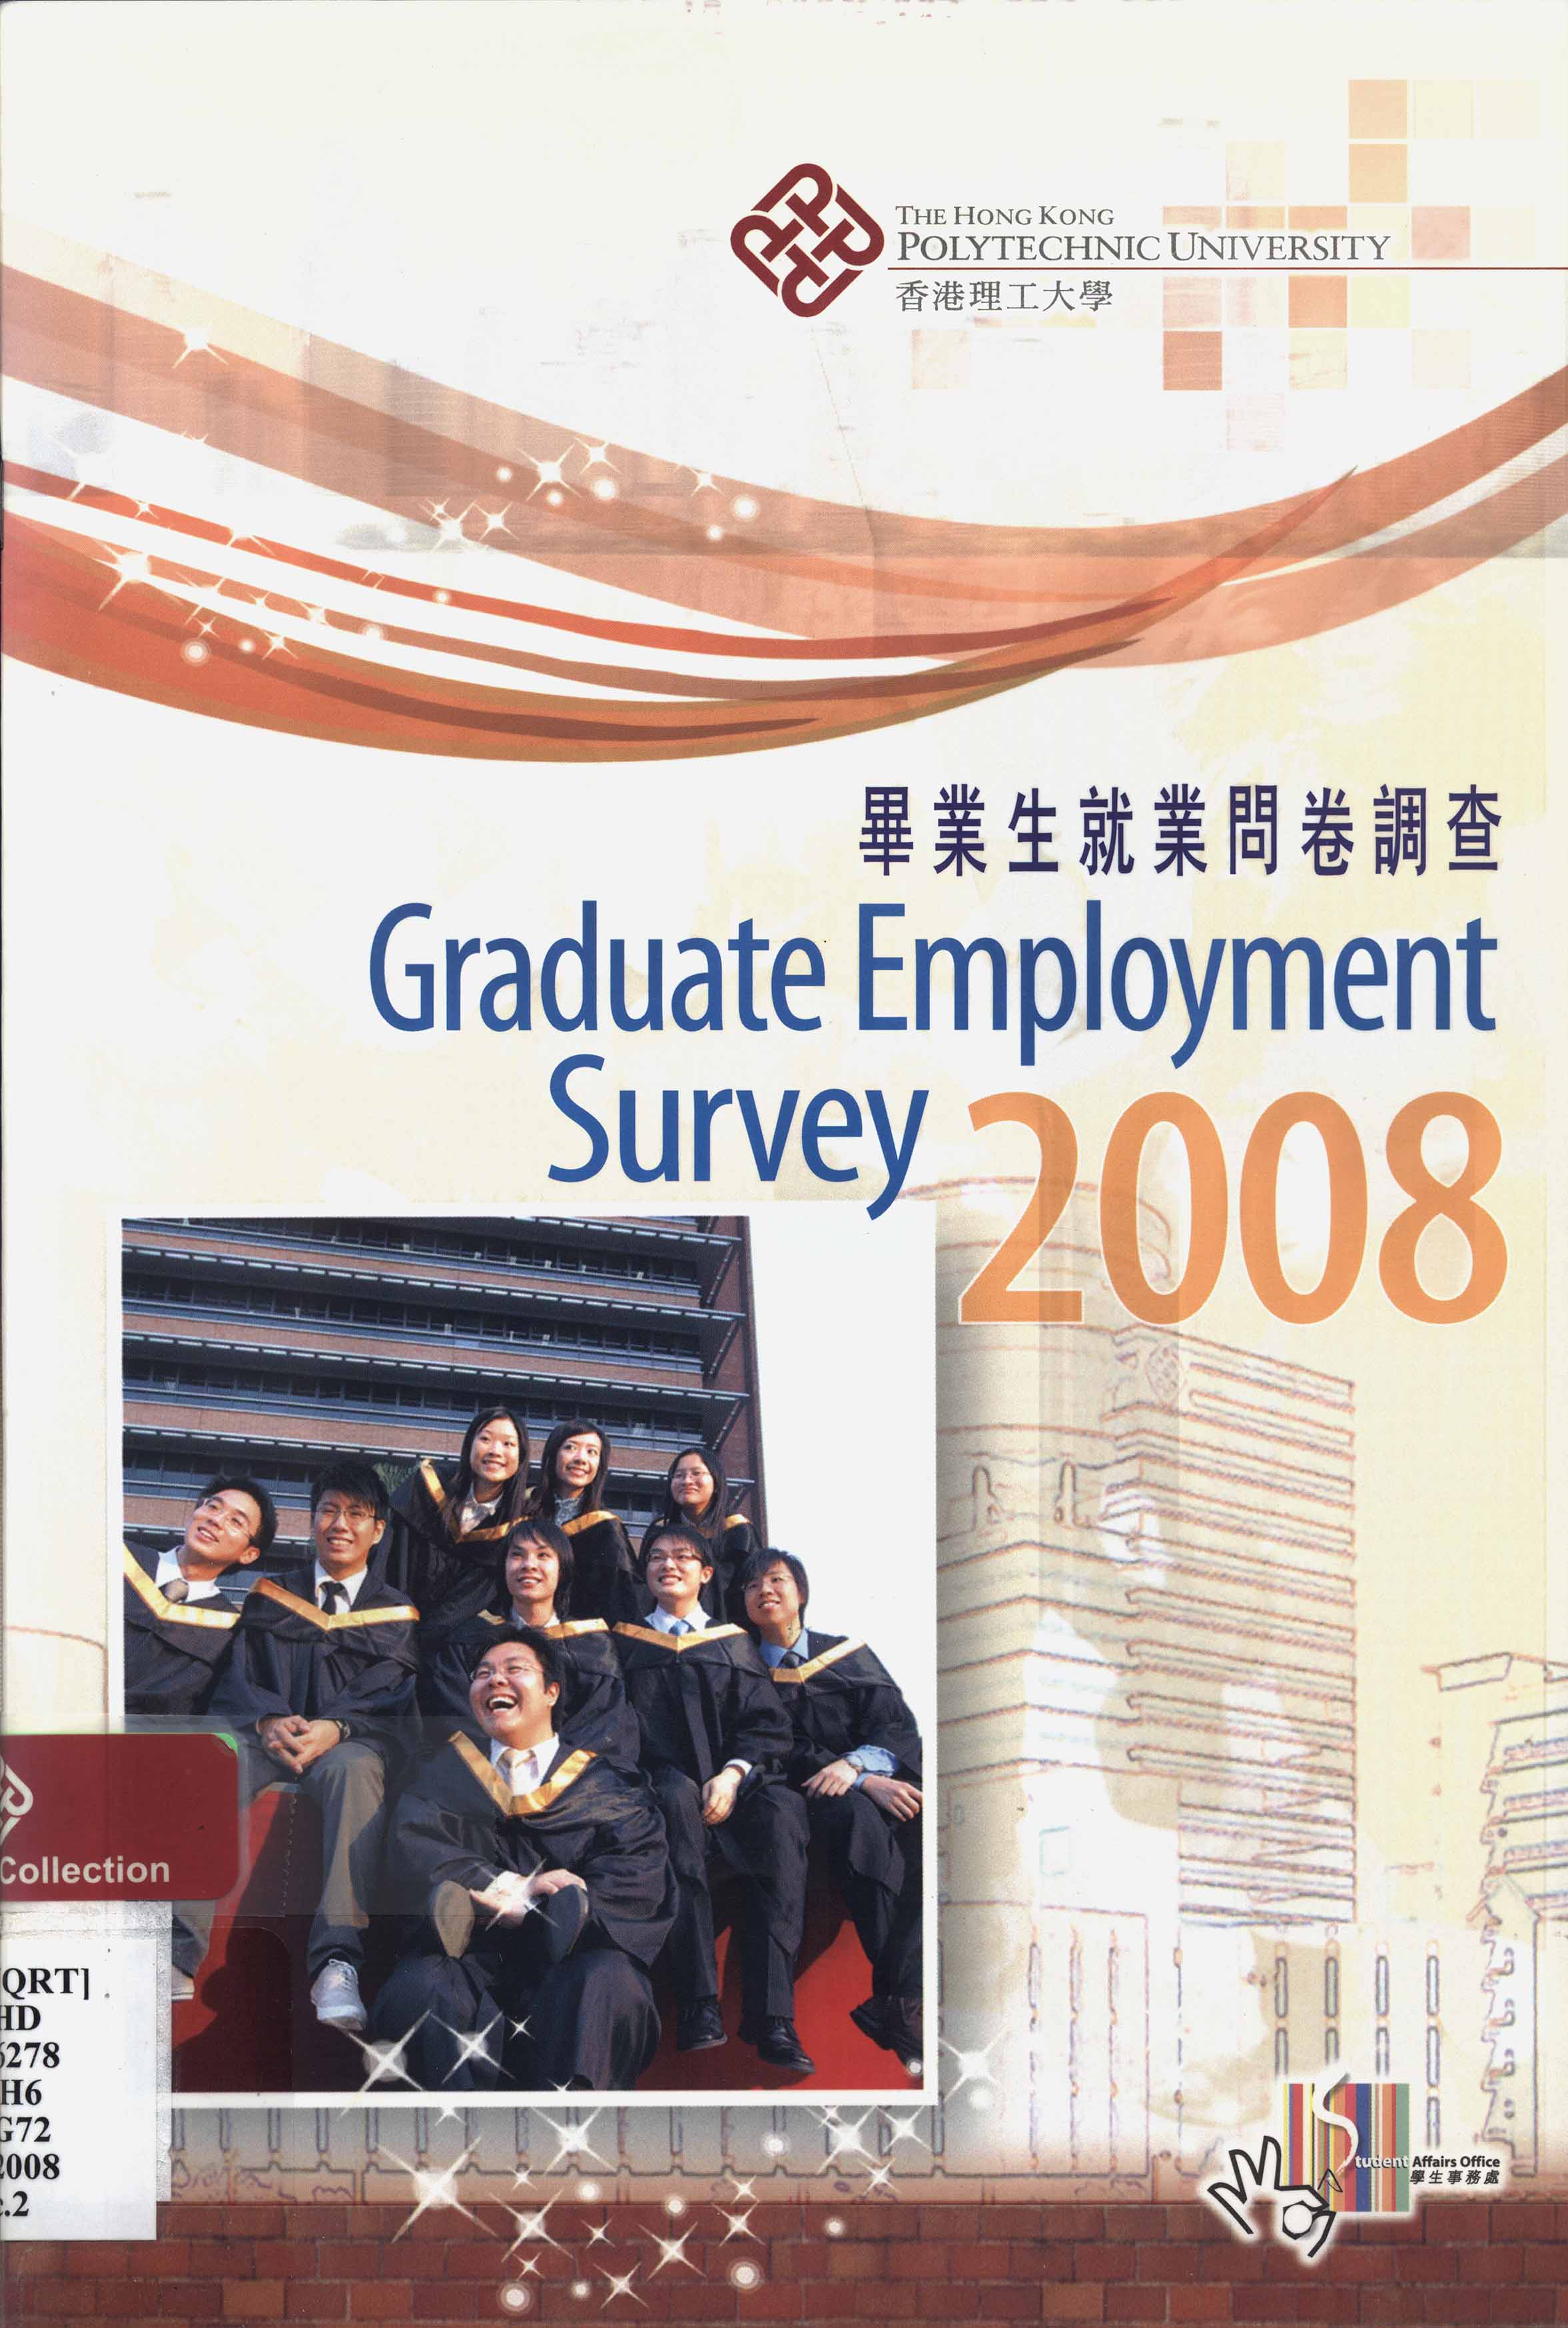 Graduate employment survey 2008